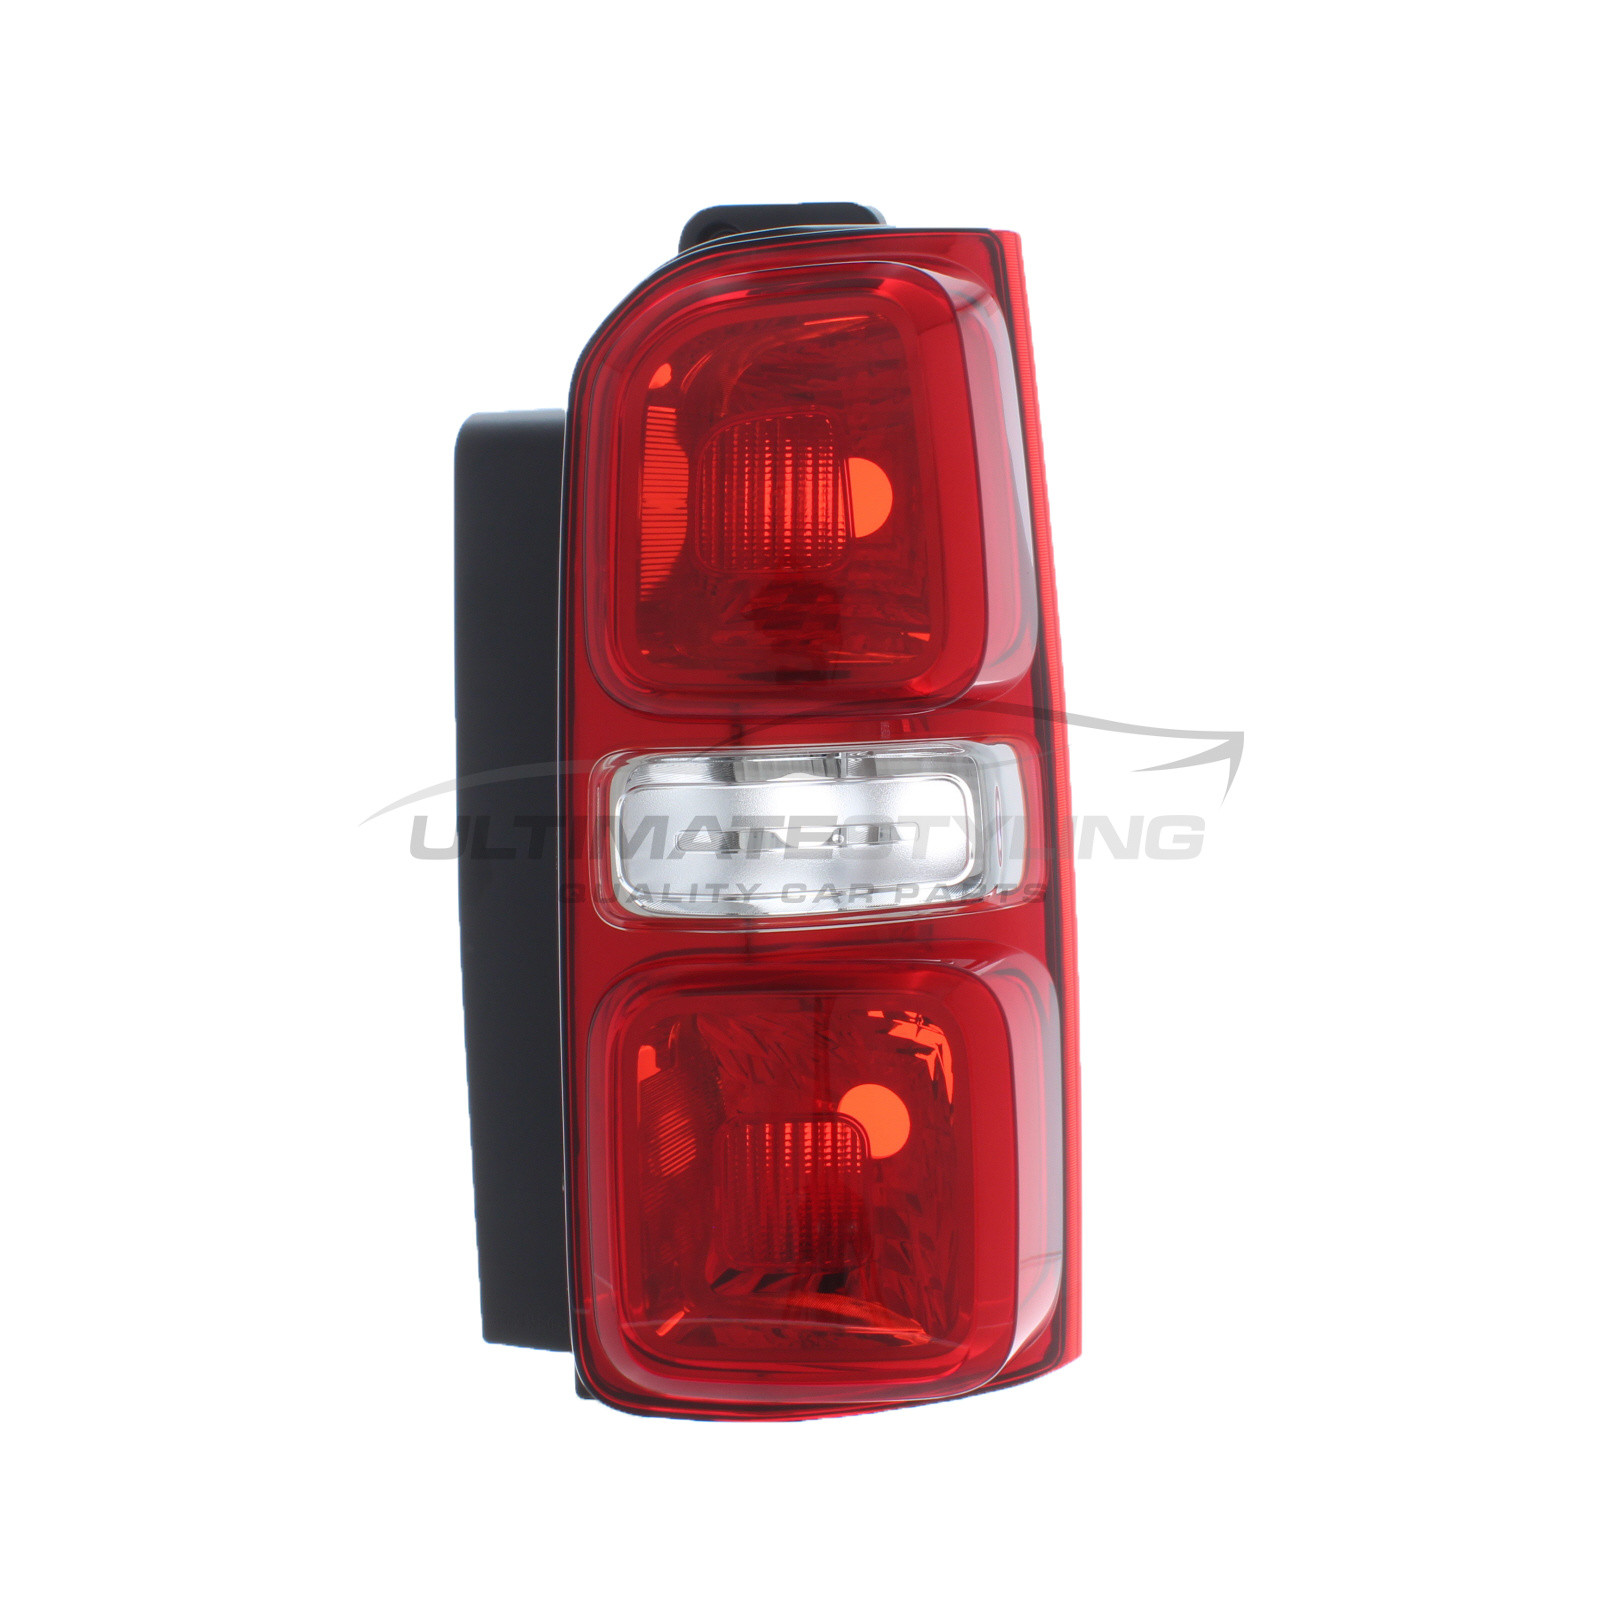 Rear Light / Tail Light for Vauxhall Vivaro